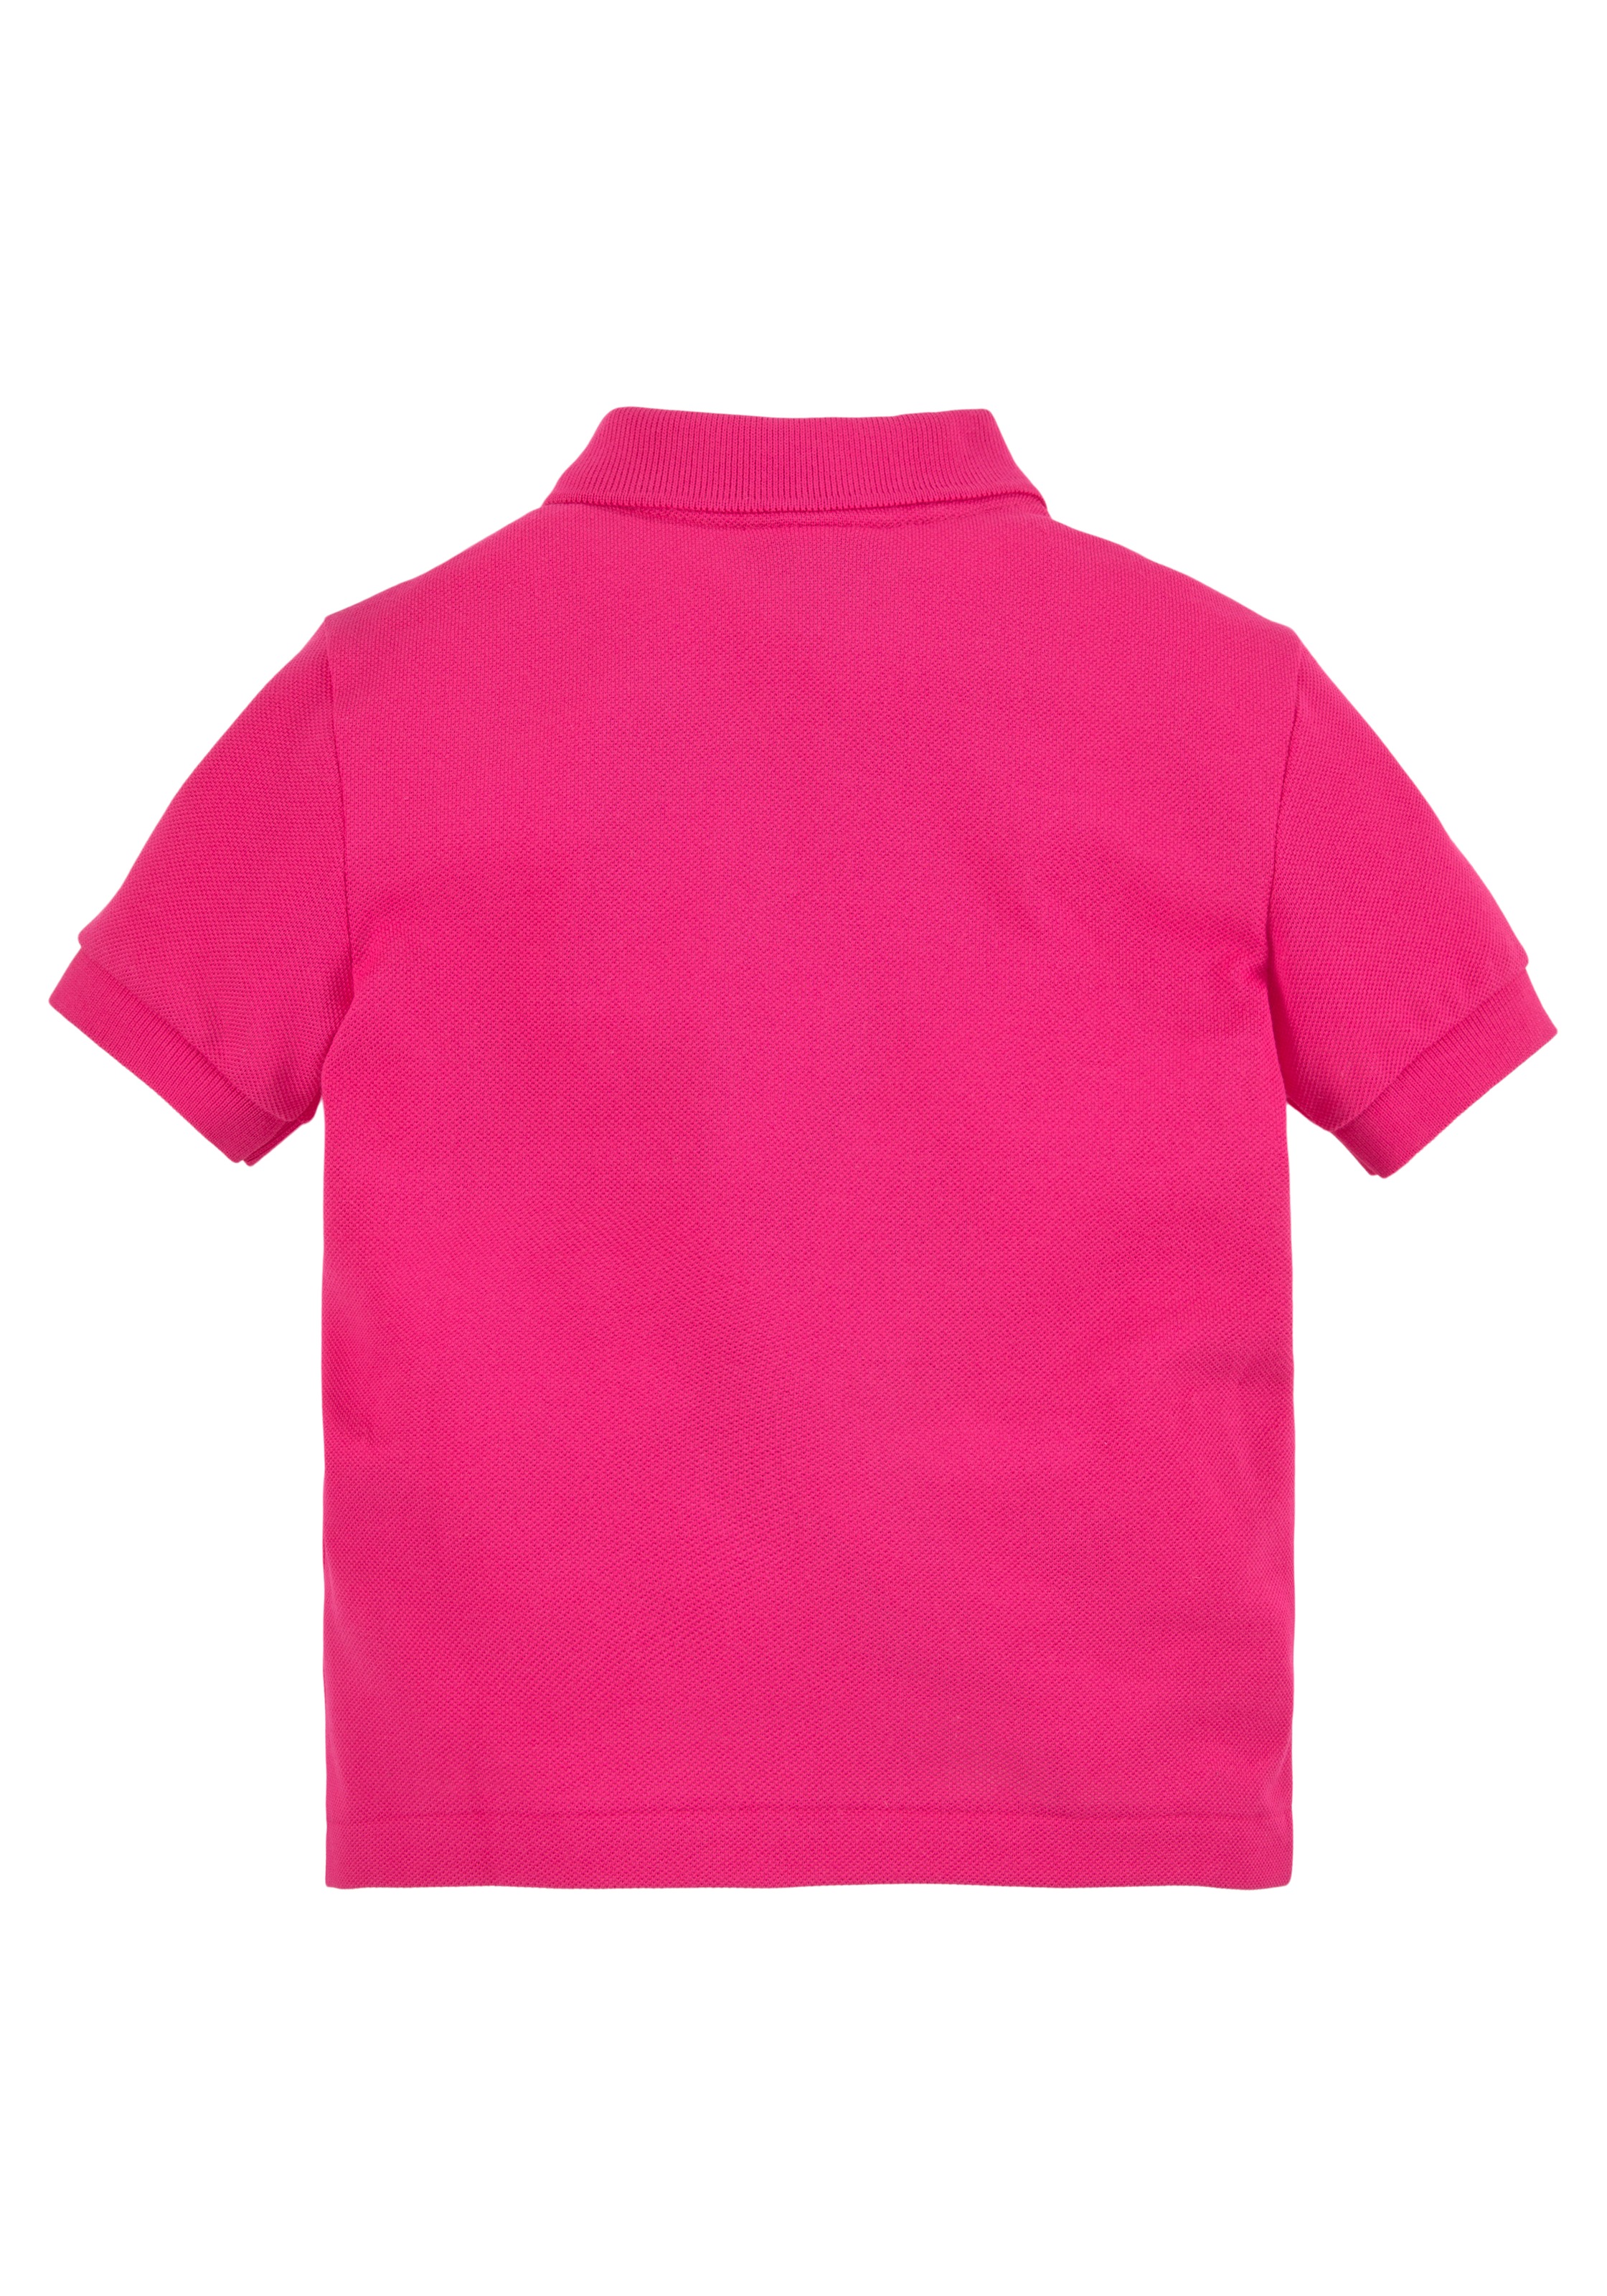 Lacoste Poloshirt, Kinder Kids Junior Kids aufgesticktem OTTO kaufen Kroko MiniMe,Junior, Polo mit bei